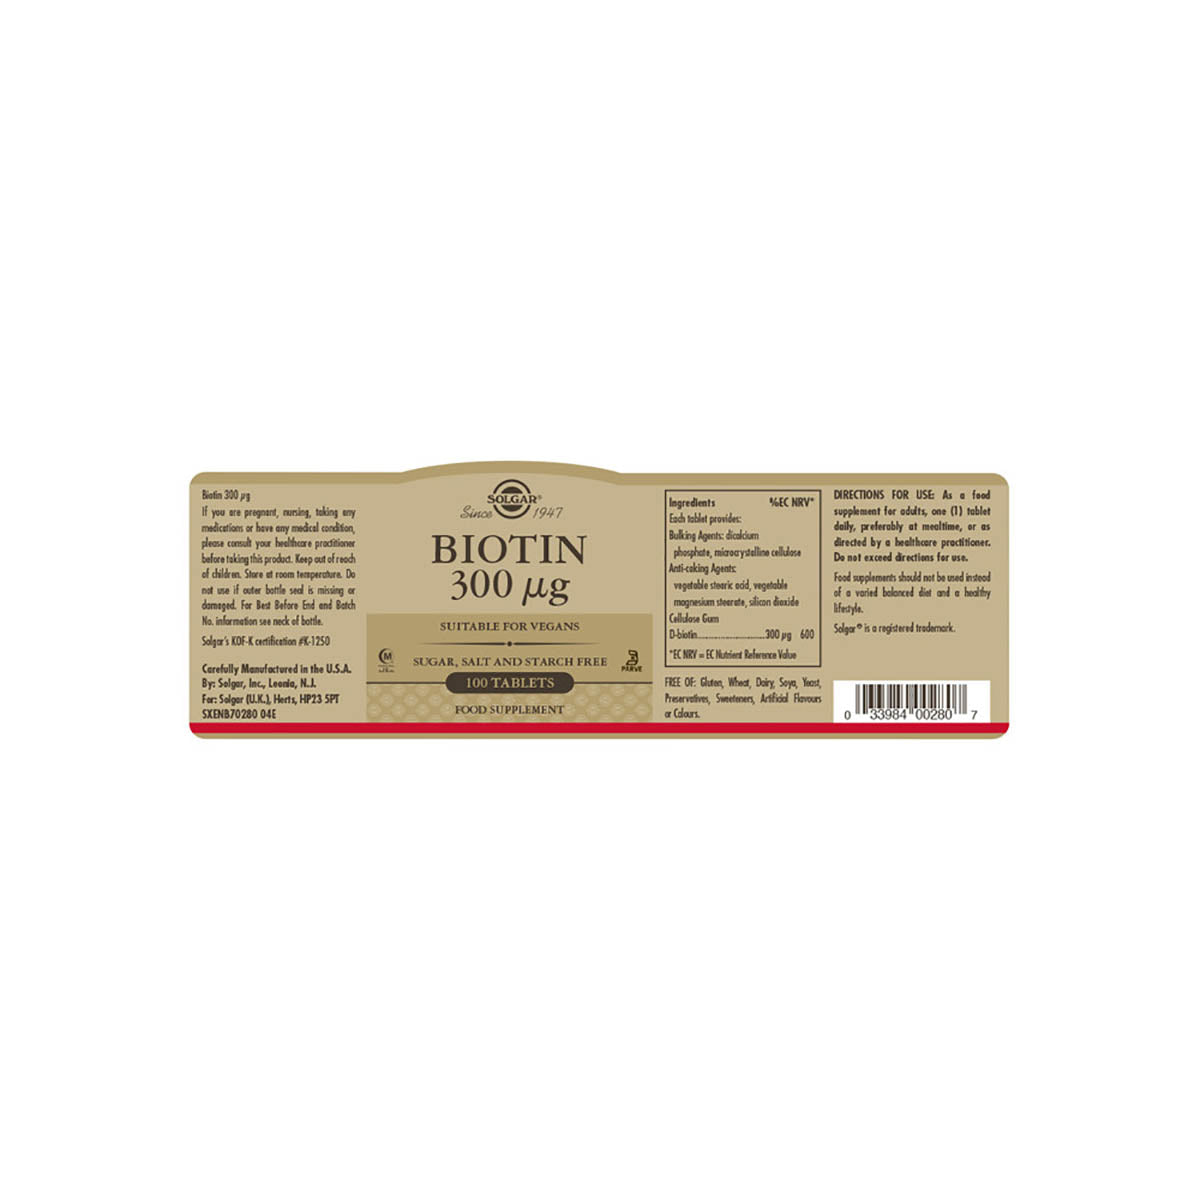 Solgar® Biotin 300 µg Tablets - Pack of 100